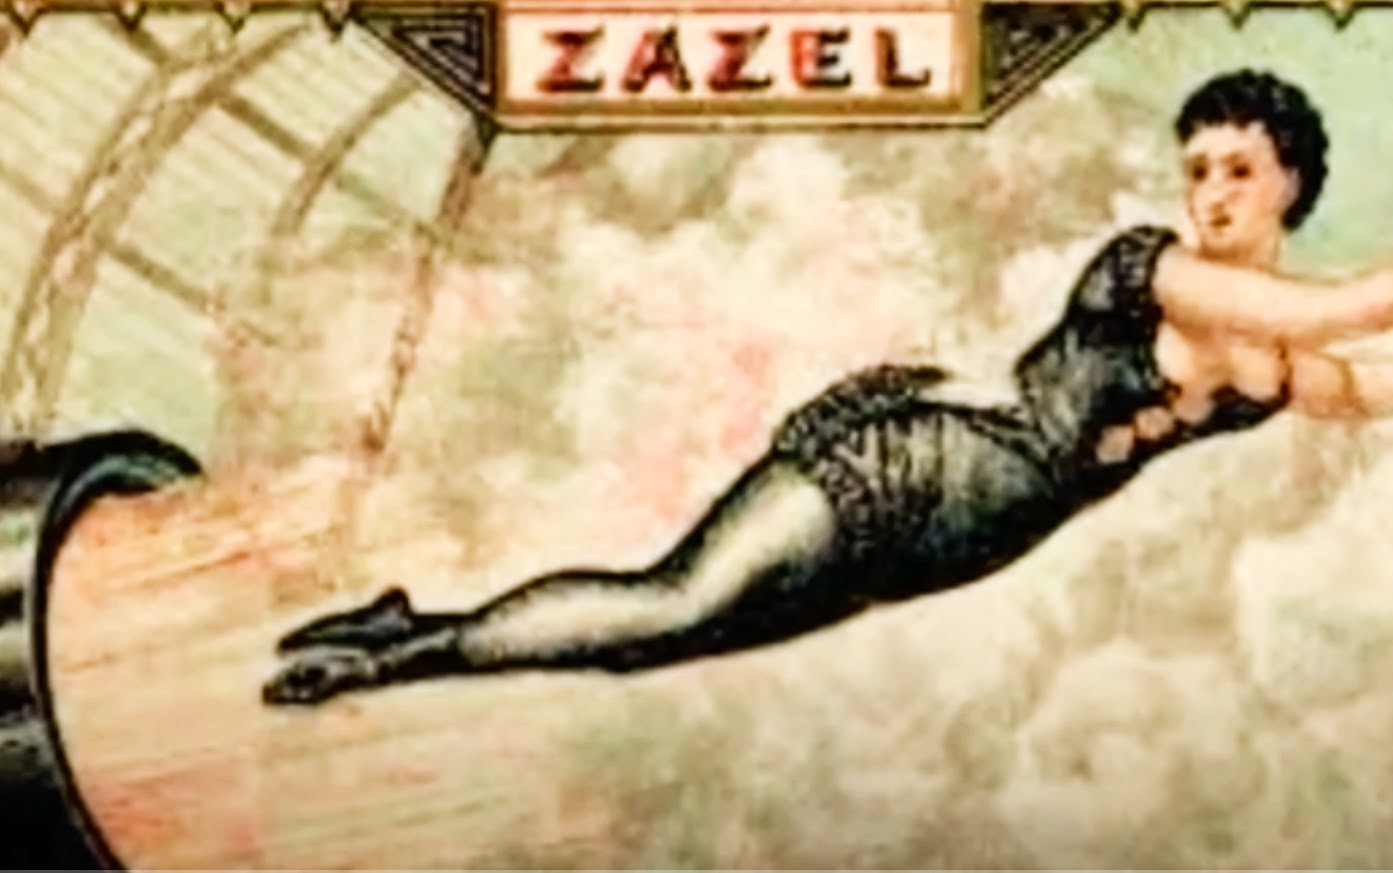 Zazel